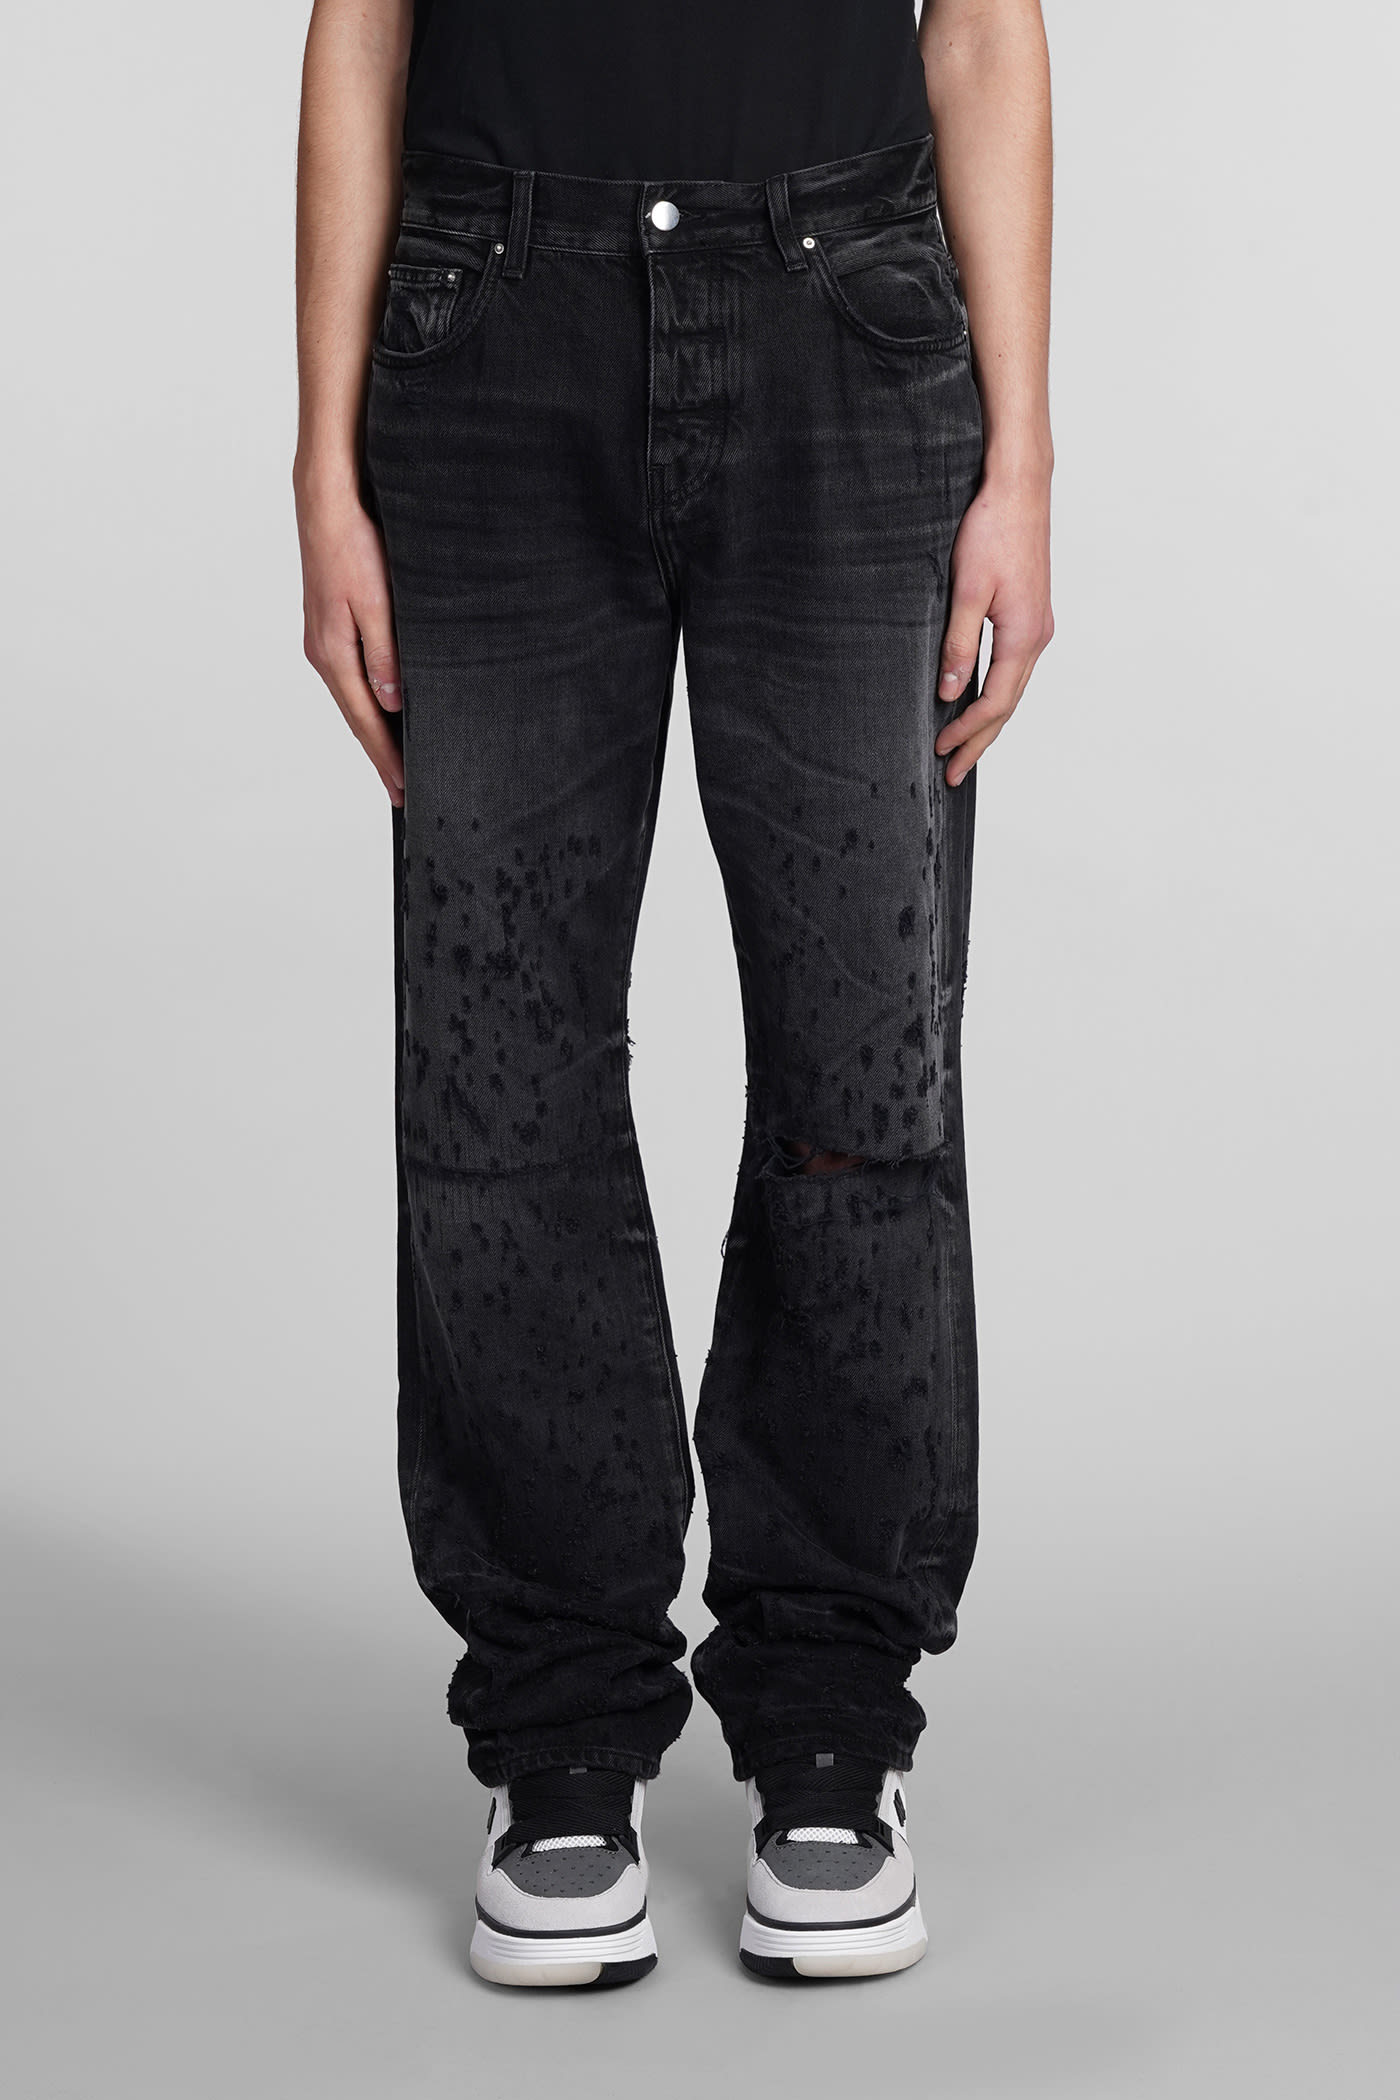 AMIRI Jeans In Black Cotton